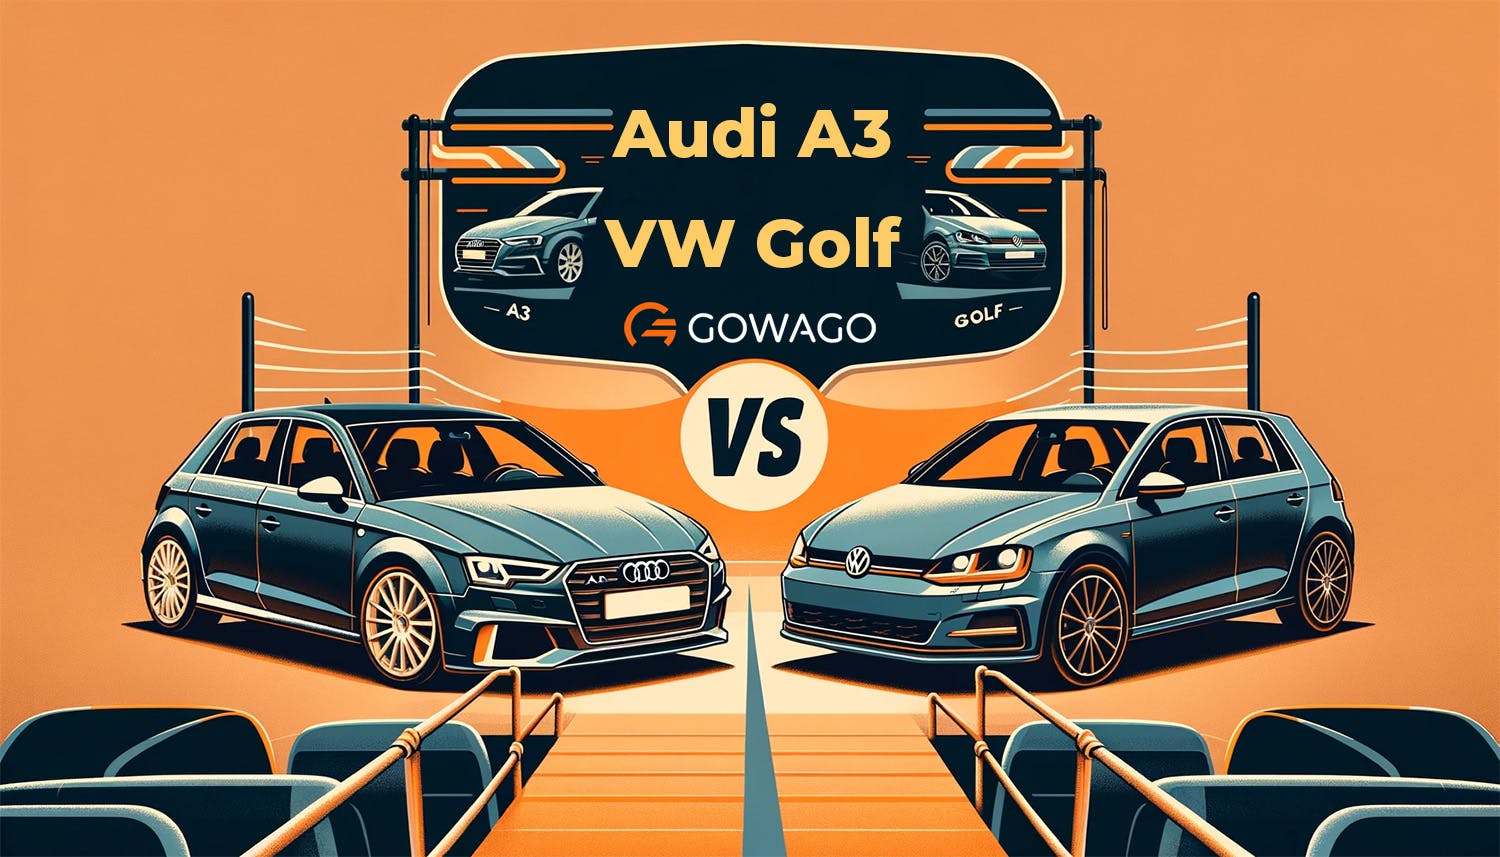 blog item card - Comparaison entre l’Audi A3 et la VW Golf - Laquelle devriez-vous prendre en leasing ? Préférez-vous la sportivité premium ou la robustesse éprouvée ? gowago.ch vous donne les réponses !